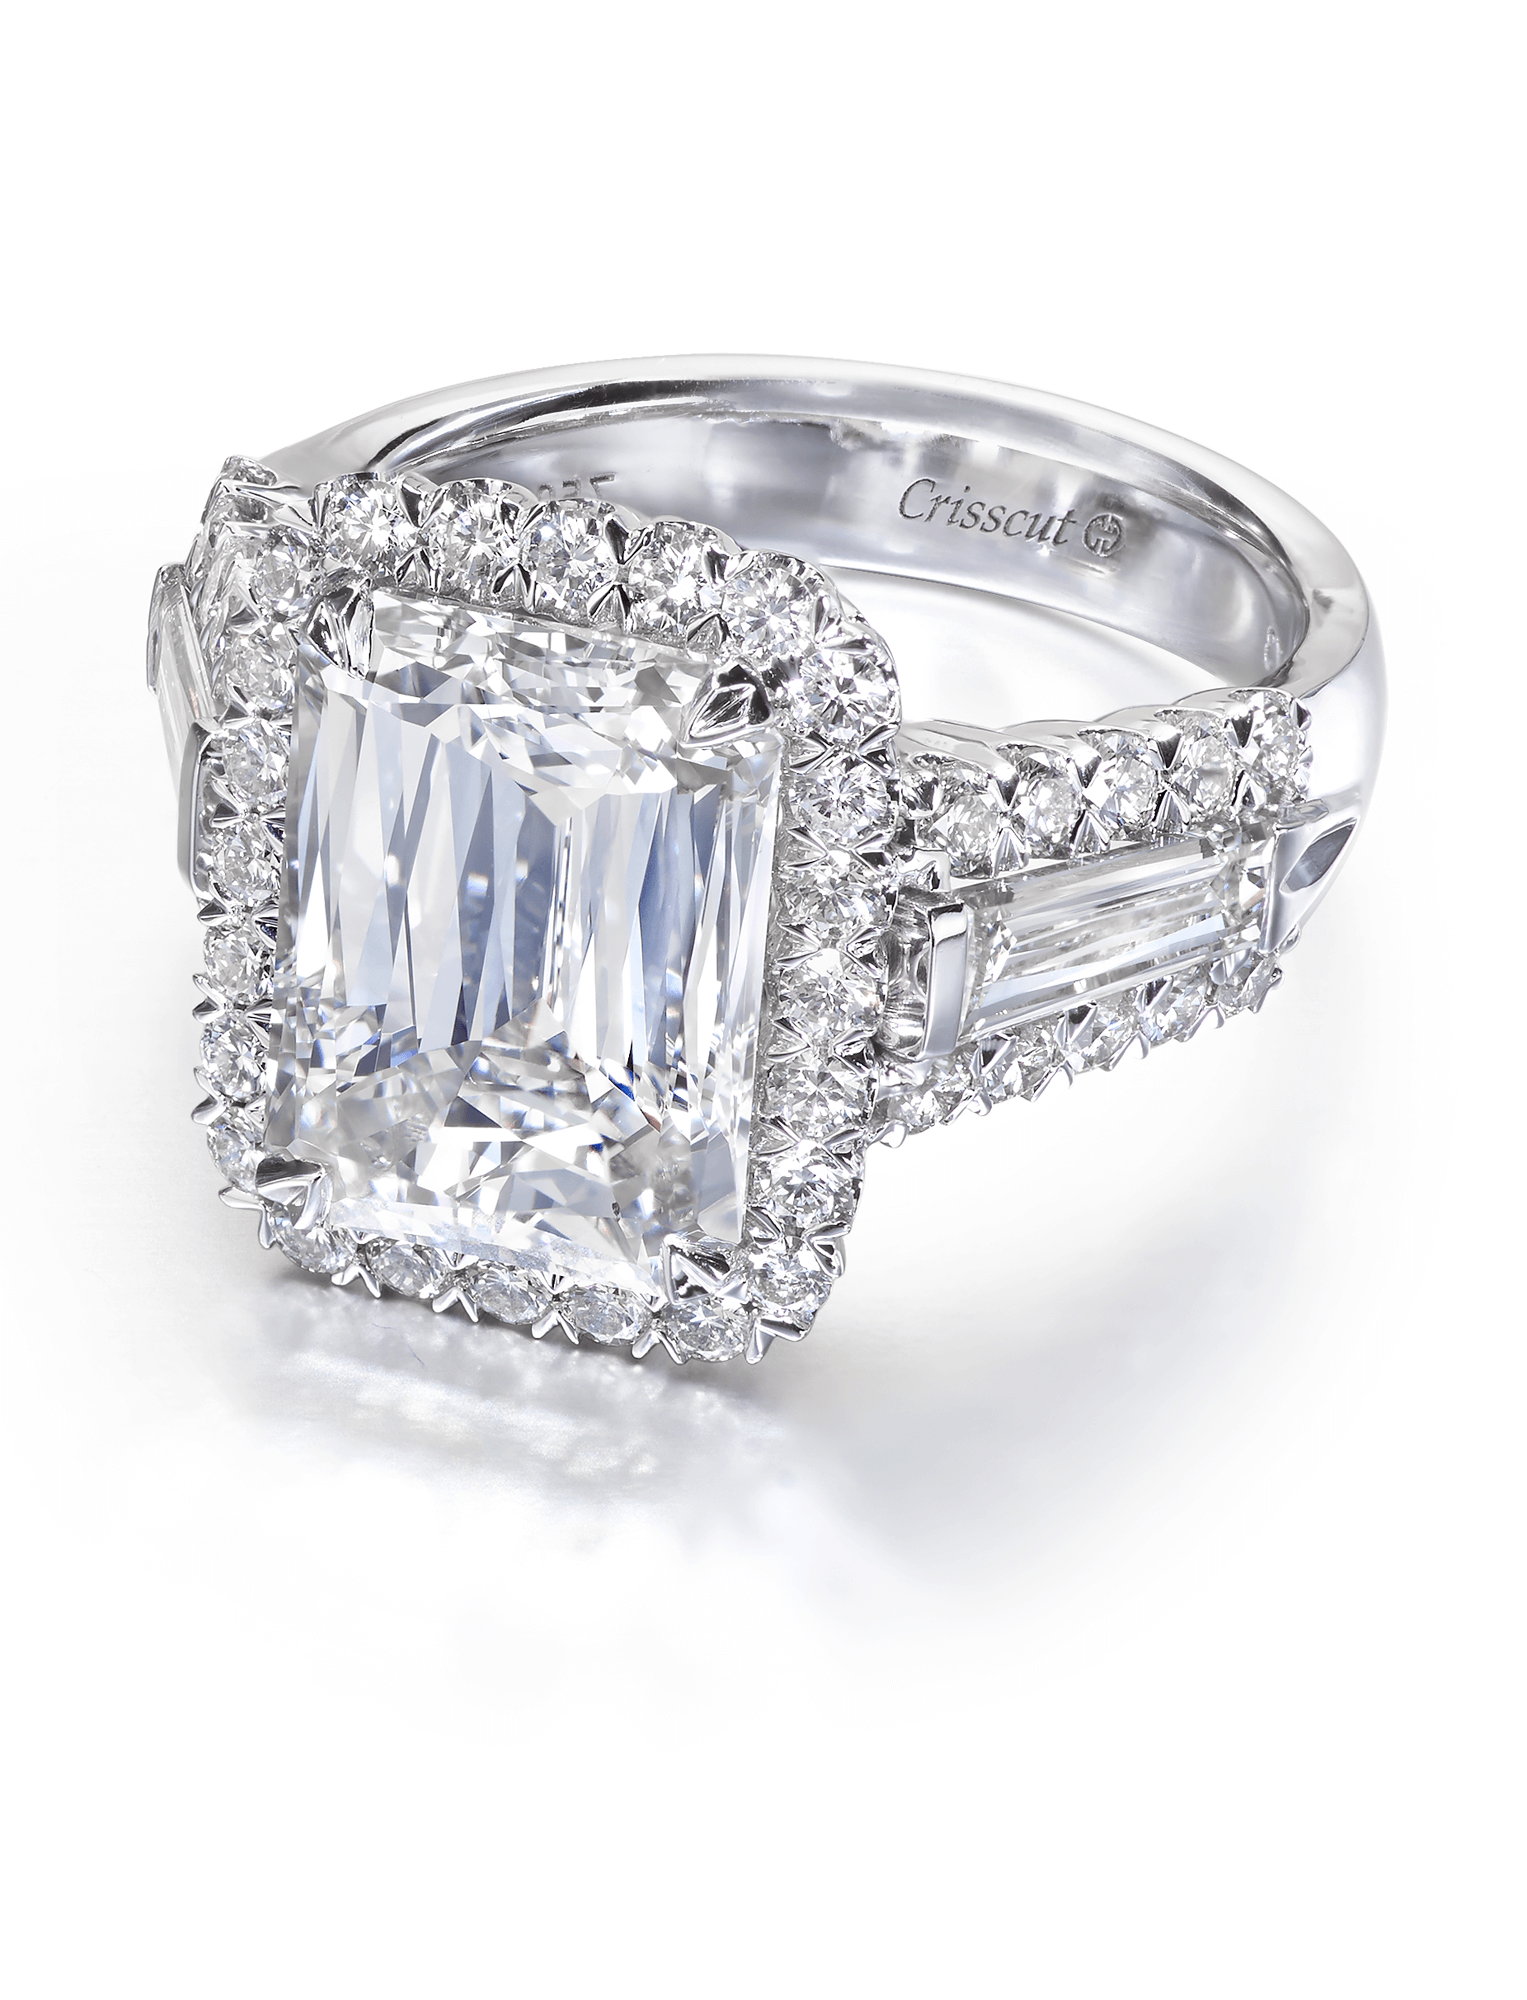 2 Carat Diamond Emerald Cut 3 Stone Engagement Ring In 950 Platinum |  Fascinating Diamonds